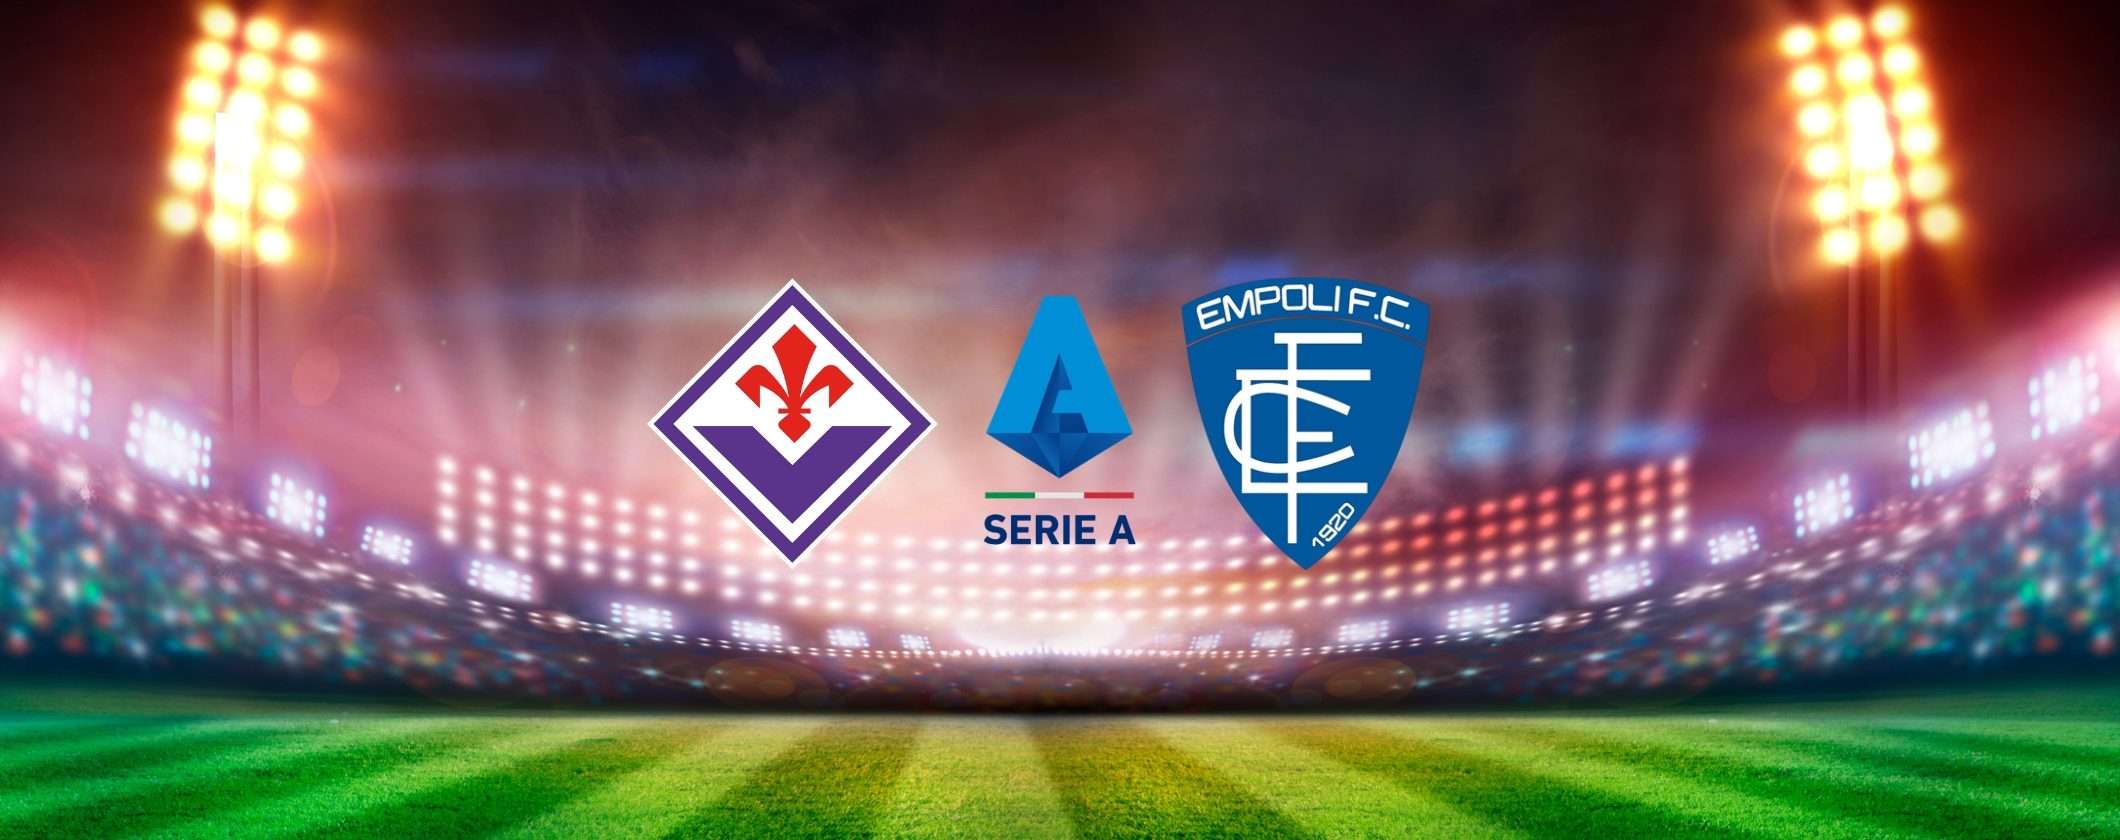 Fiorentina-Empoli: novità, streaming e orario diretta